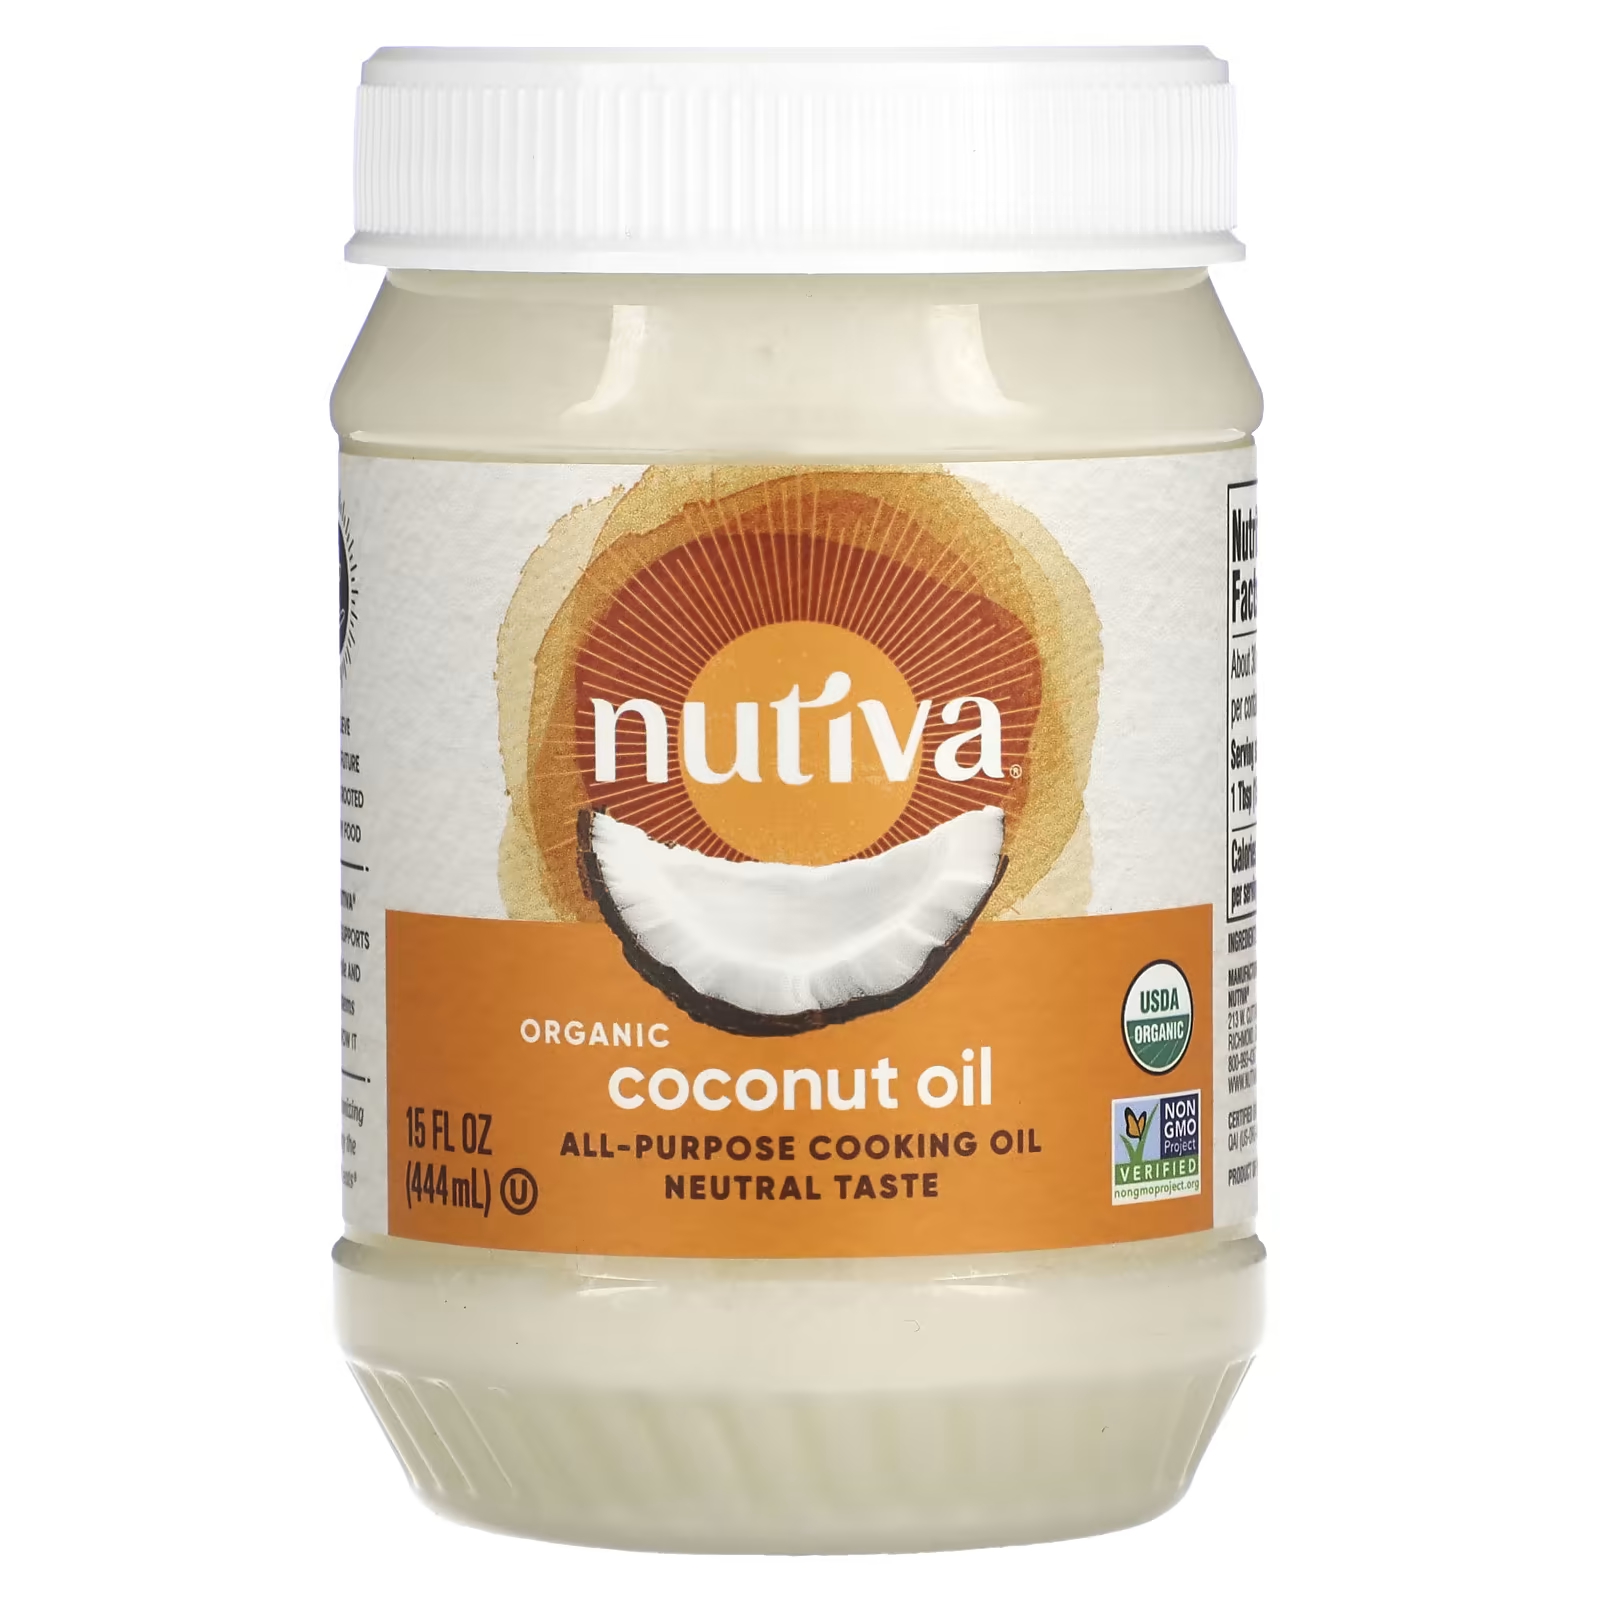 Универсальное кулинарное масло, органическое кокосовое масло, 15 жидких унций (444 мл) Nutiva nutiva органическое кокосовое масло рафинированное 444 мл 15 жидких унций